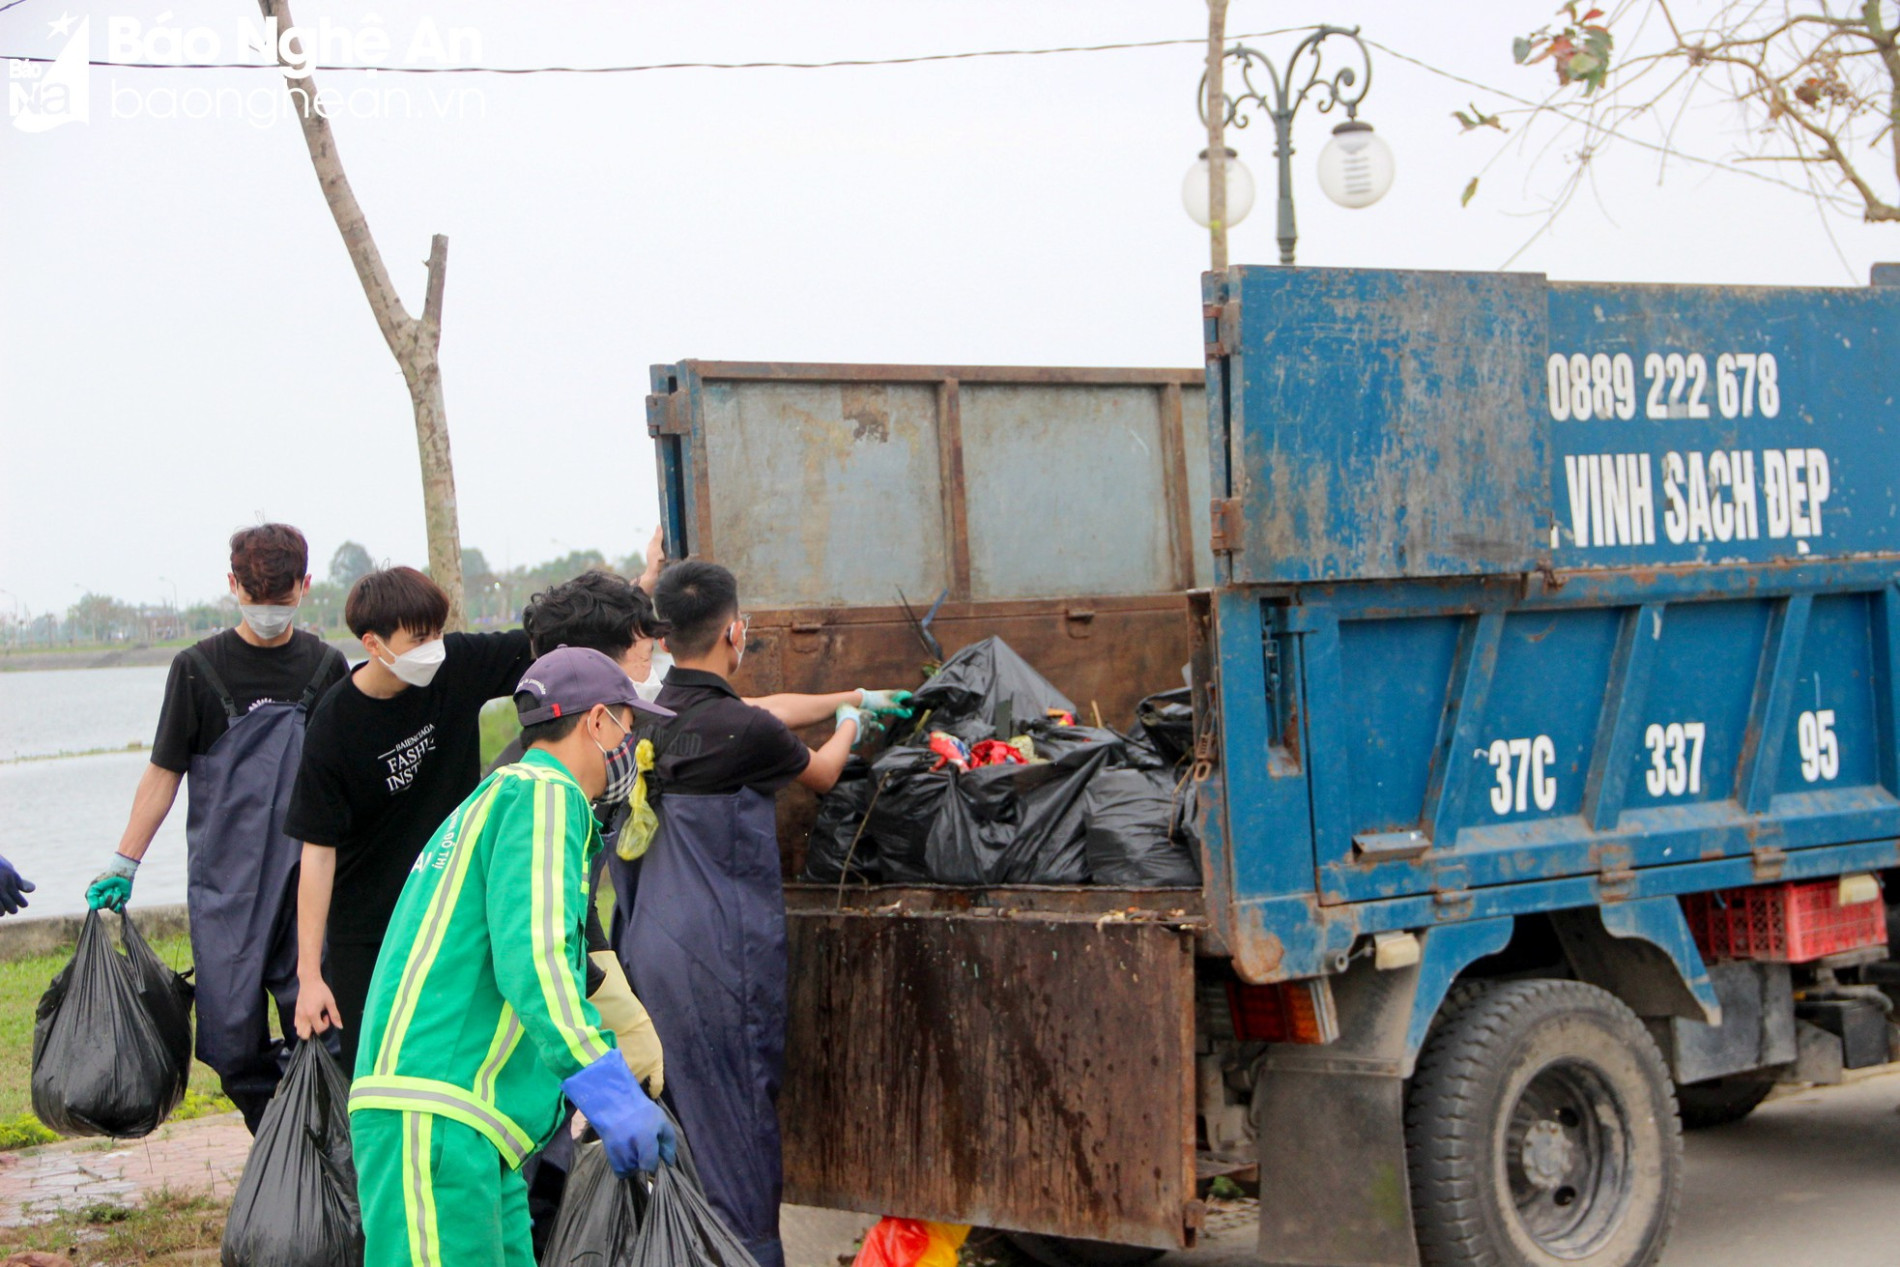 Nghệ An Xanh - Nhóm bạn trẻ gen Z tình nguyện dọn rác, làm sạch môi trường ảnh 5